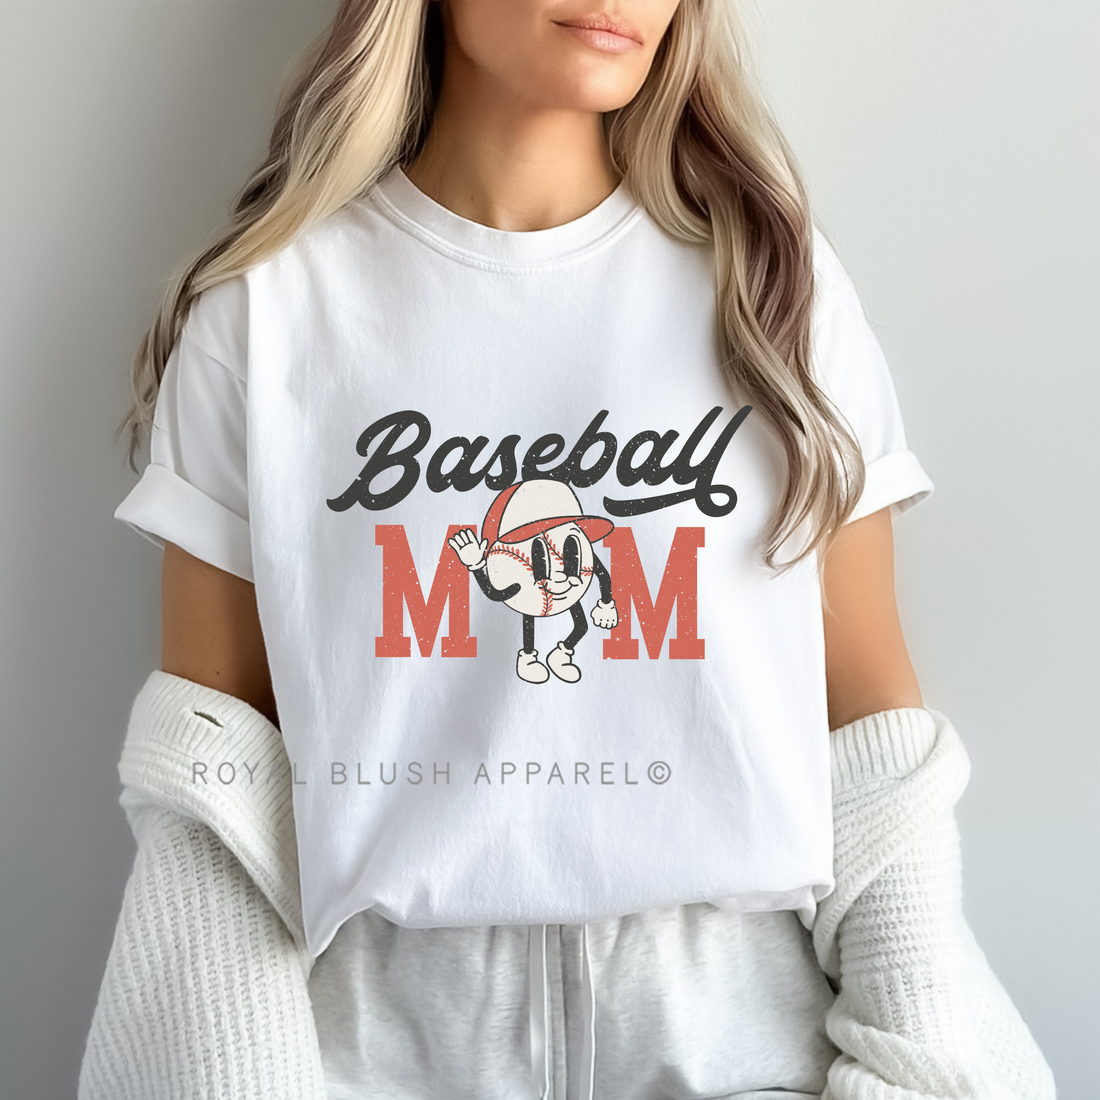 Baseball Mom Full Color Transfer